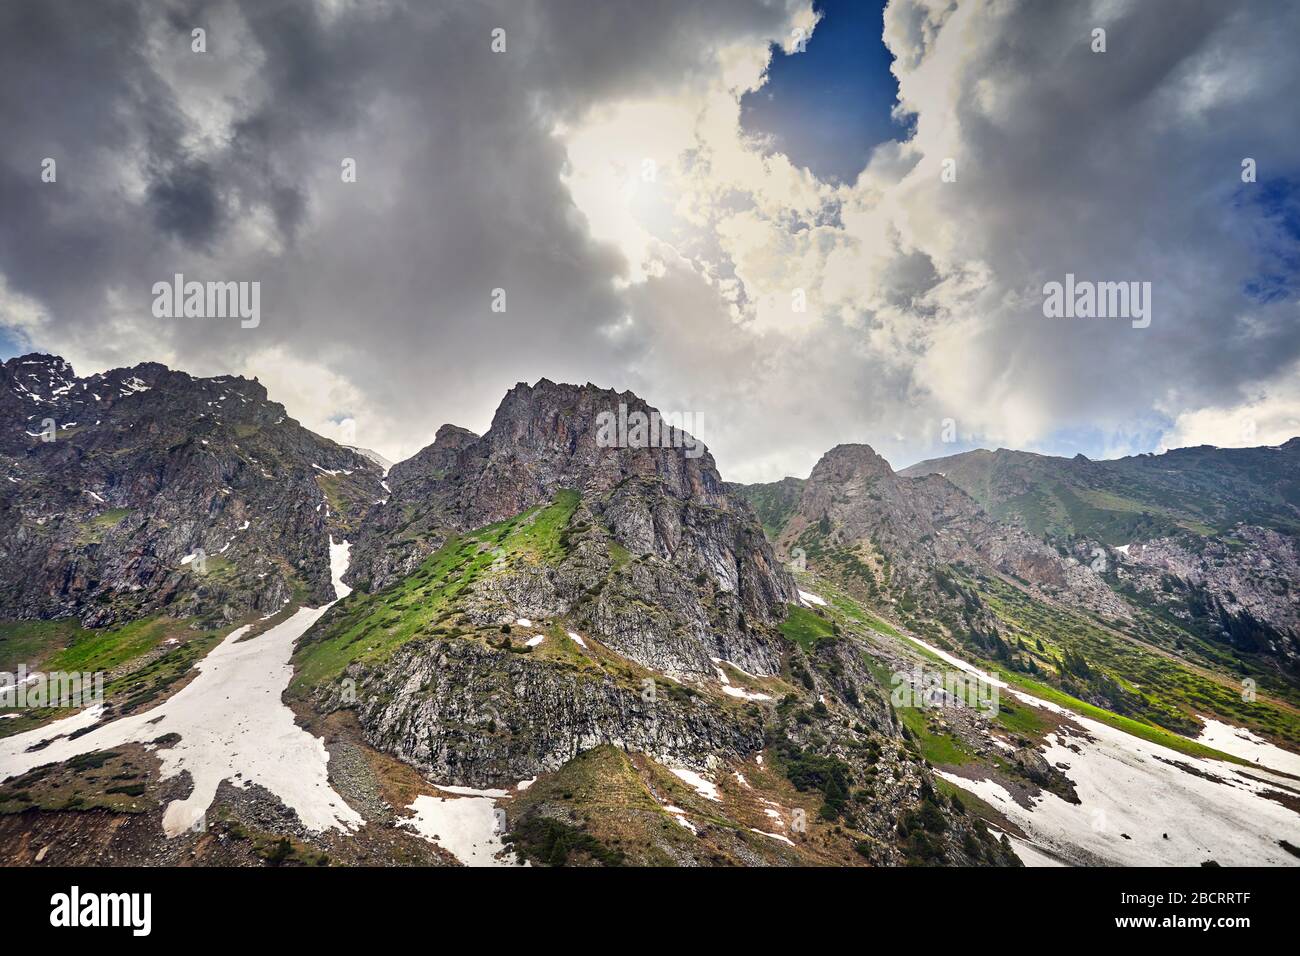 Paisaje de montañas rocosas con cielo cubierto de fondo Foto de stock